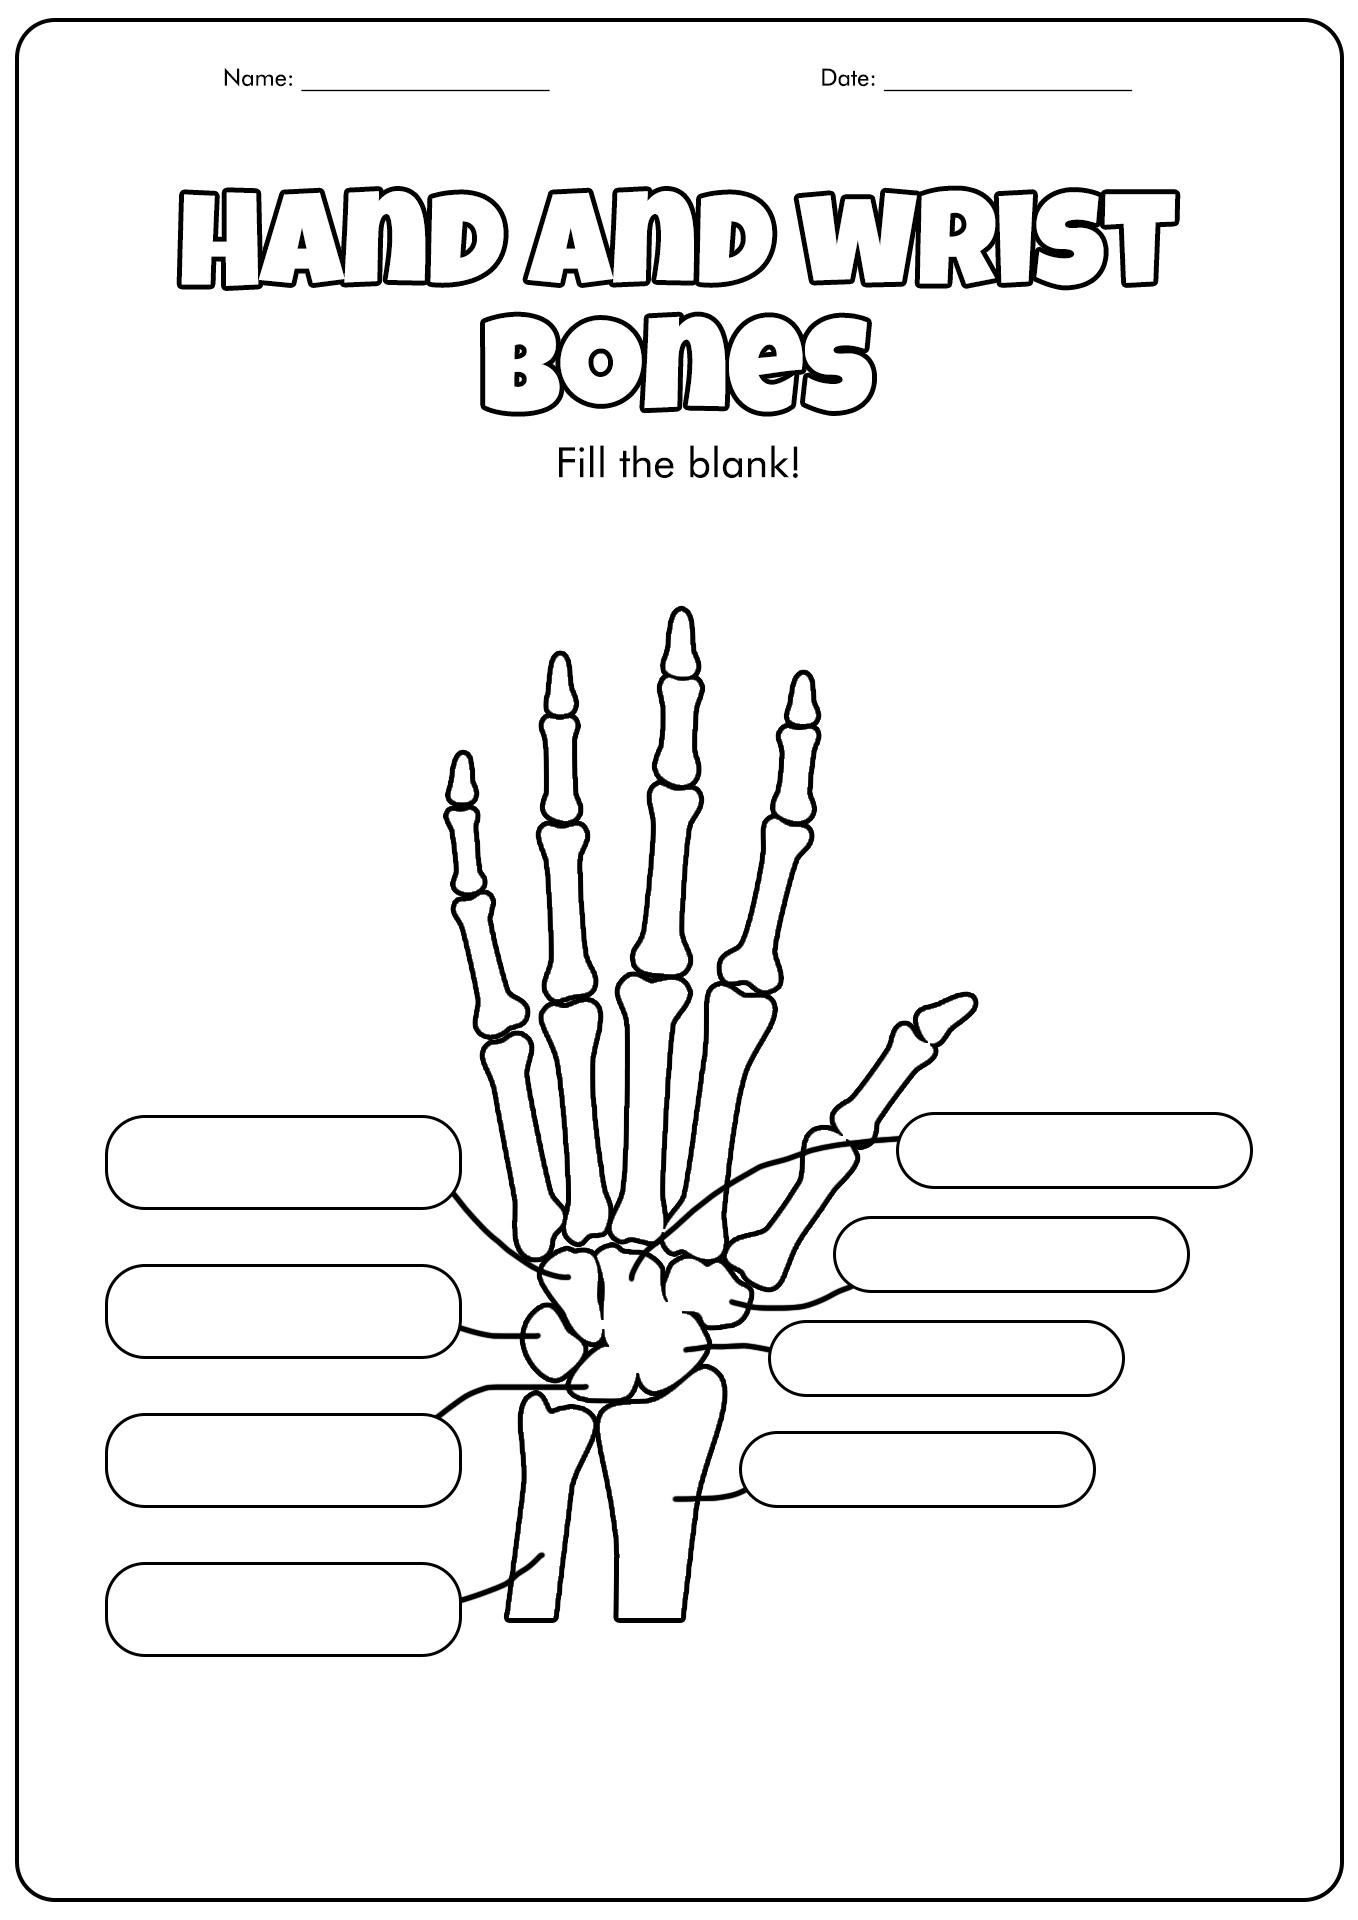 15 Best Images of Skull Labeling Worksheets - Skull Bones ...